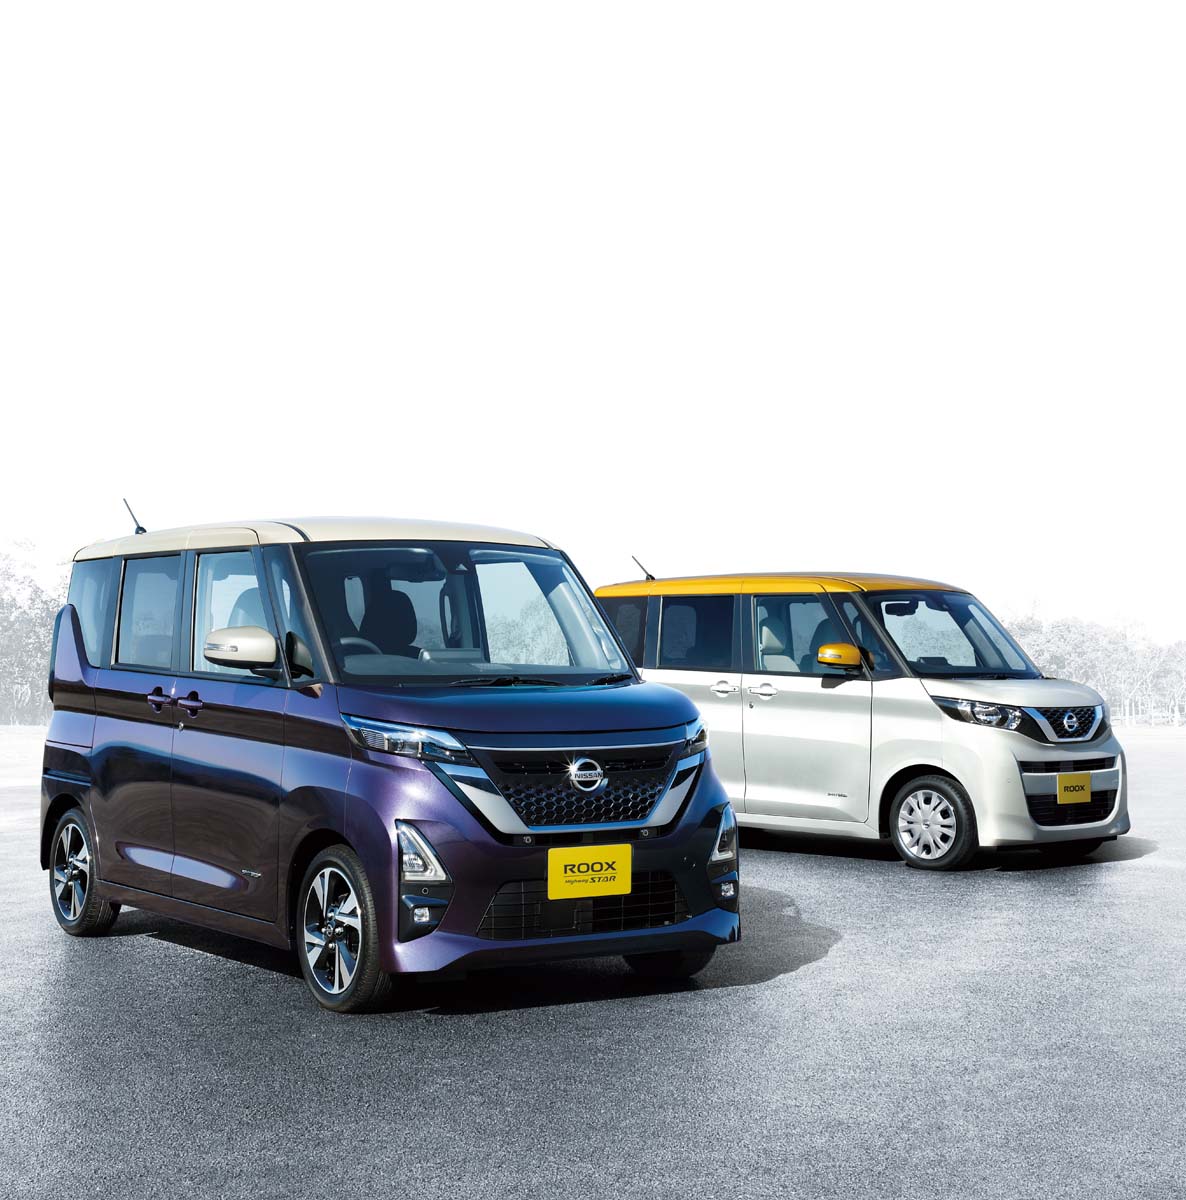 201207 01 001 Το Nissan Roox απέσπασε το τίτλο του “Kei Car of the Year” στην Ιαπωνία